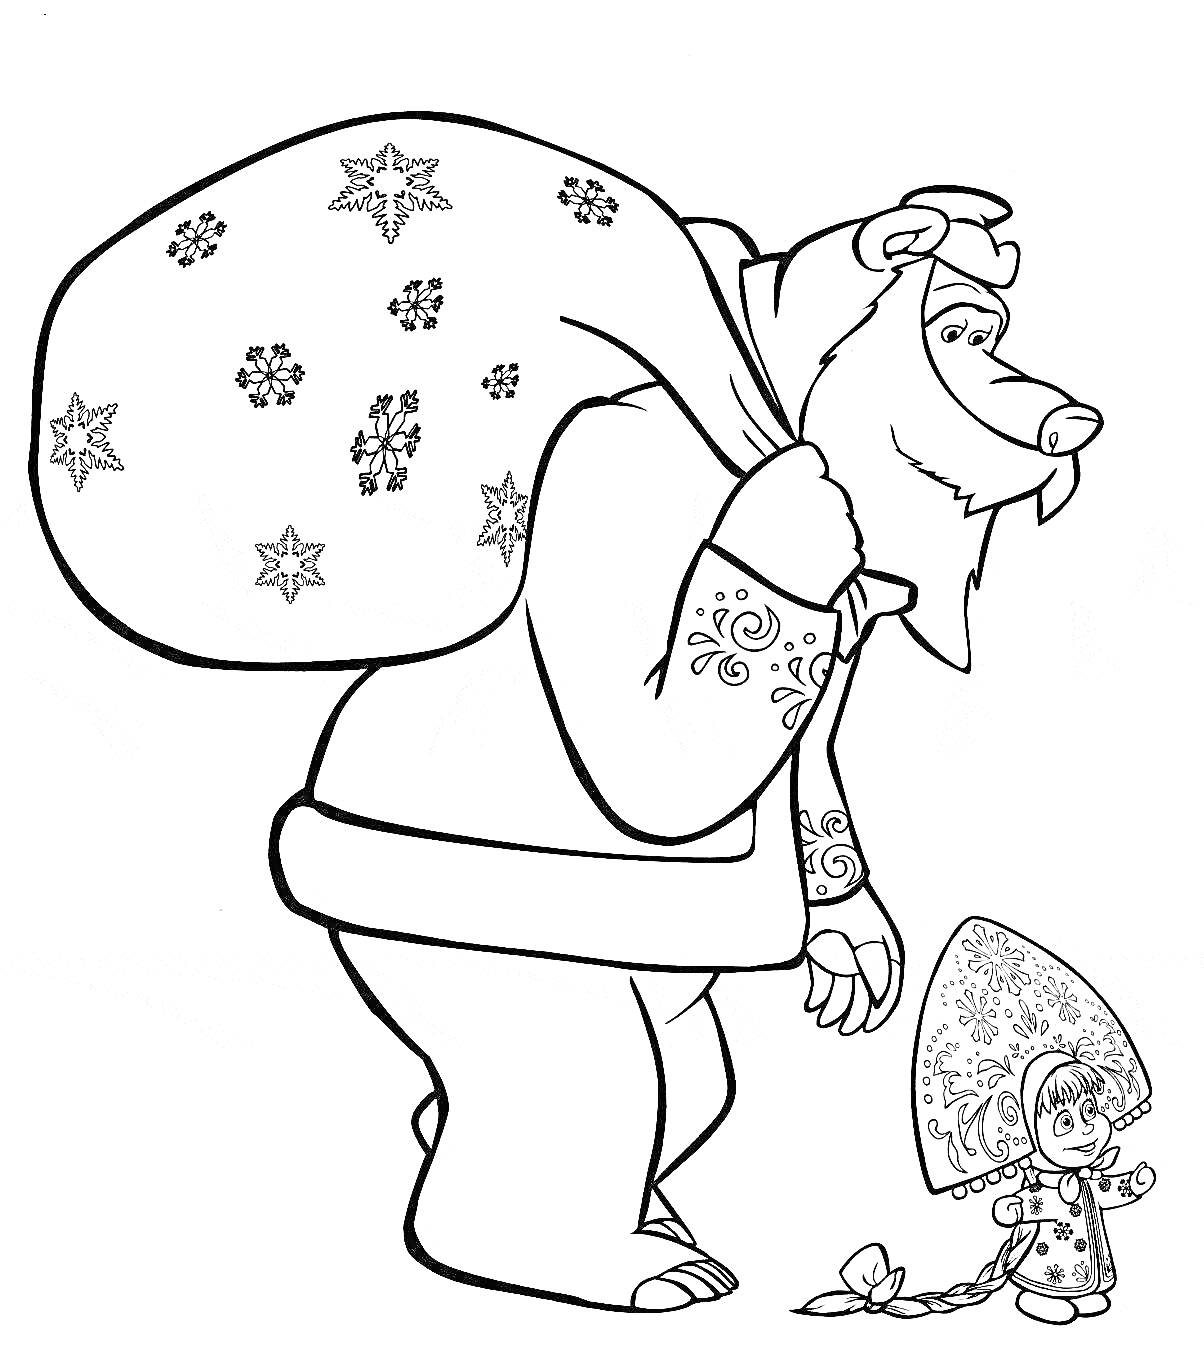 Раскраска Медведь с мешком подарков и Снегурочка с петушком